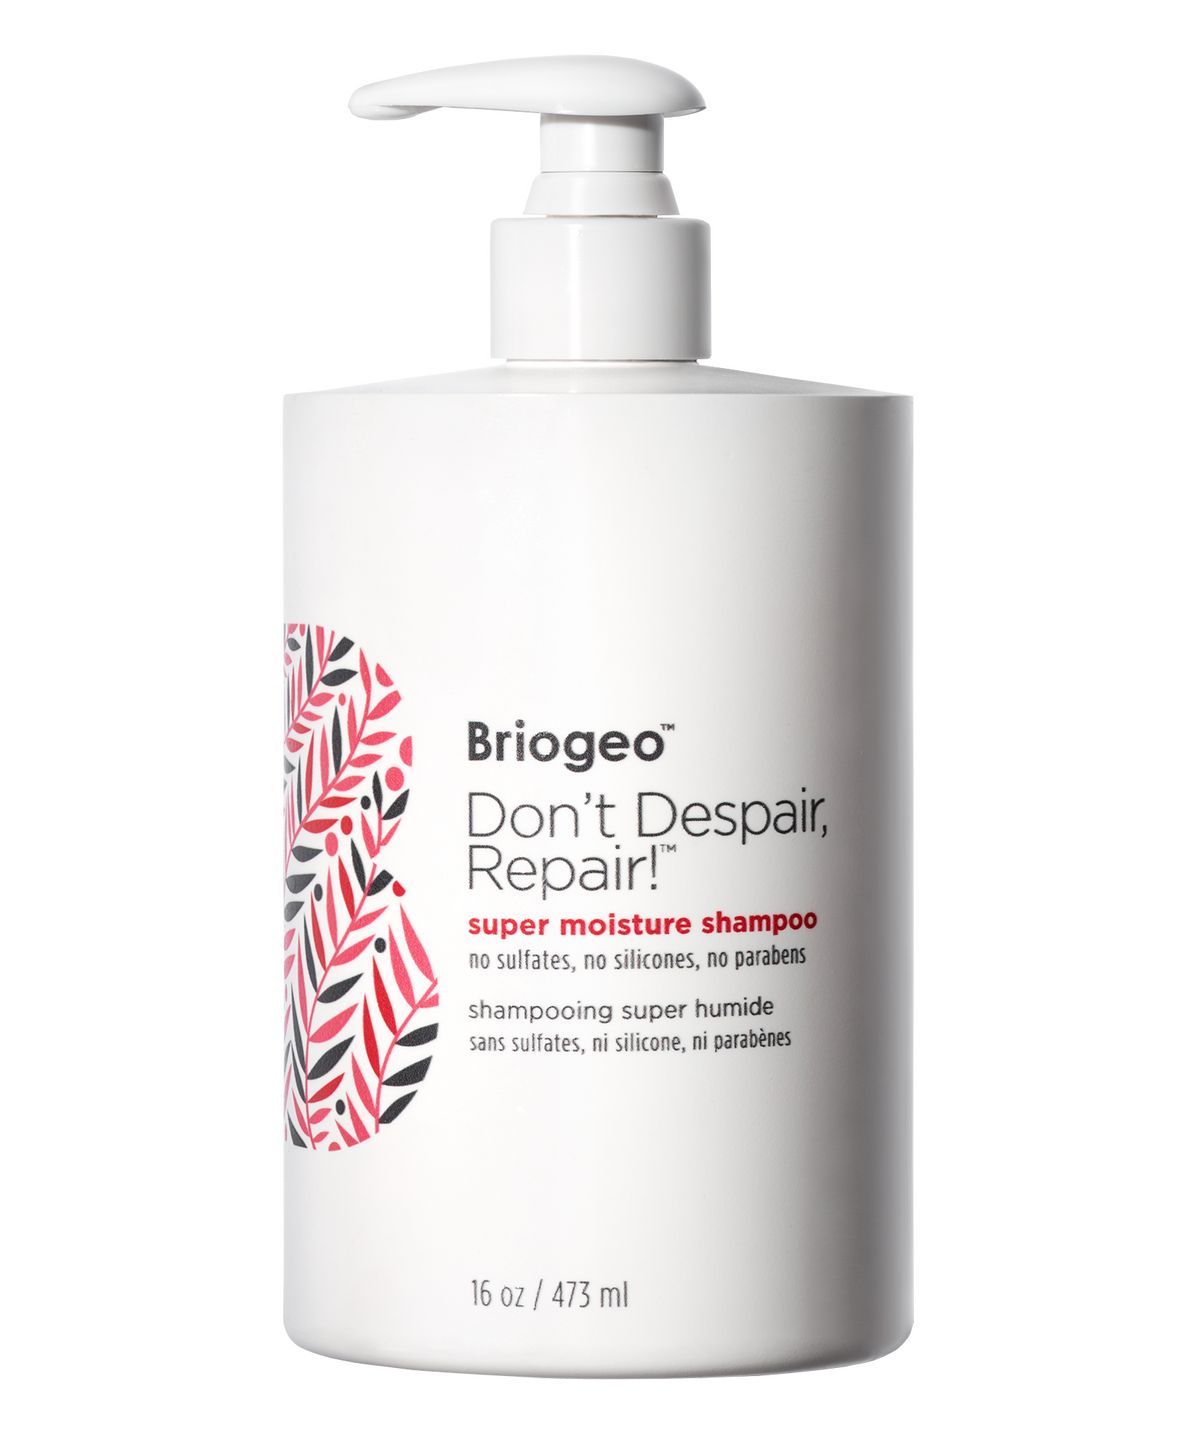 Briogeo Don’t Despair, Repair! Super Moisture Shampoo for Damaged Hair